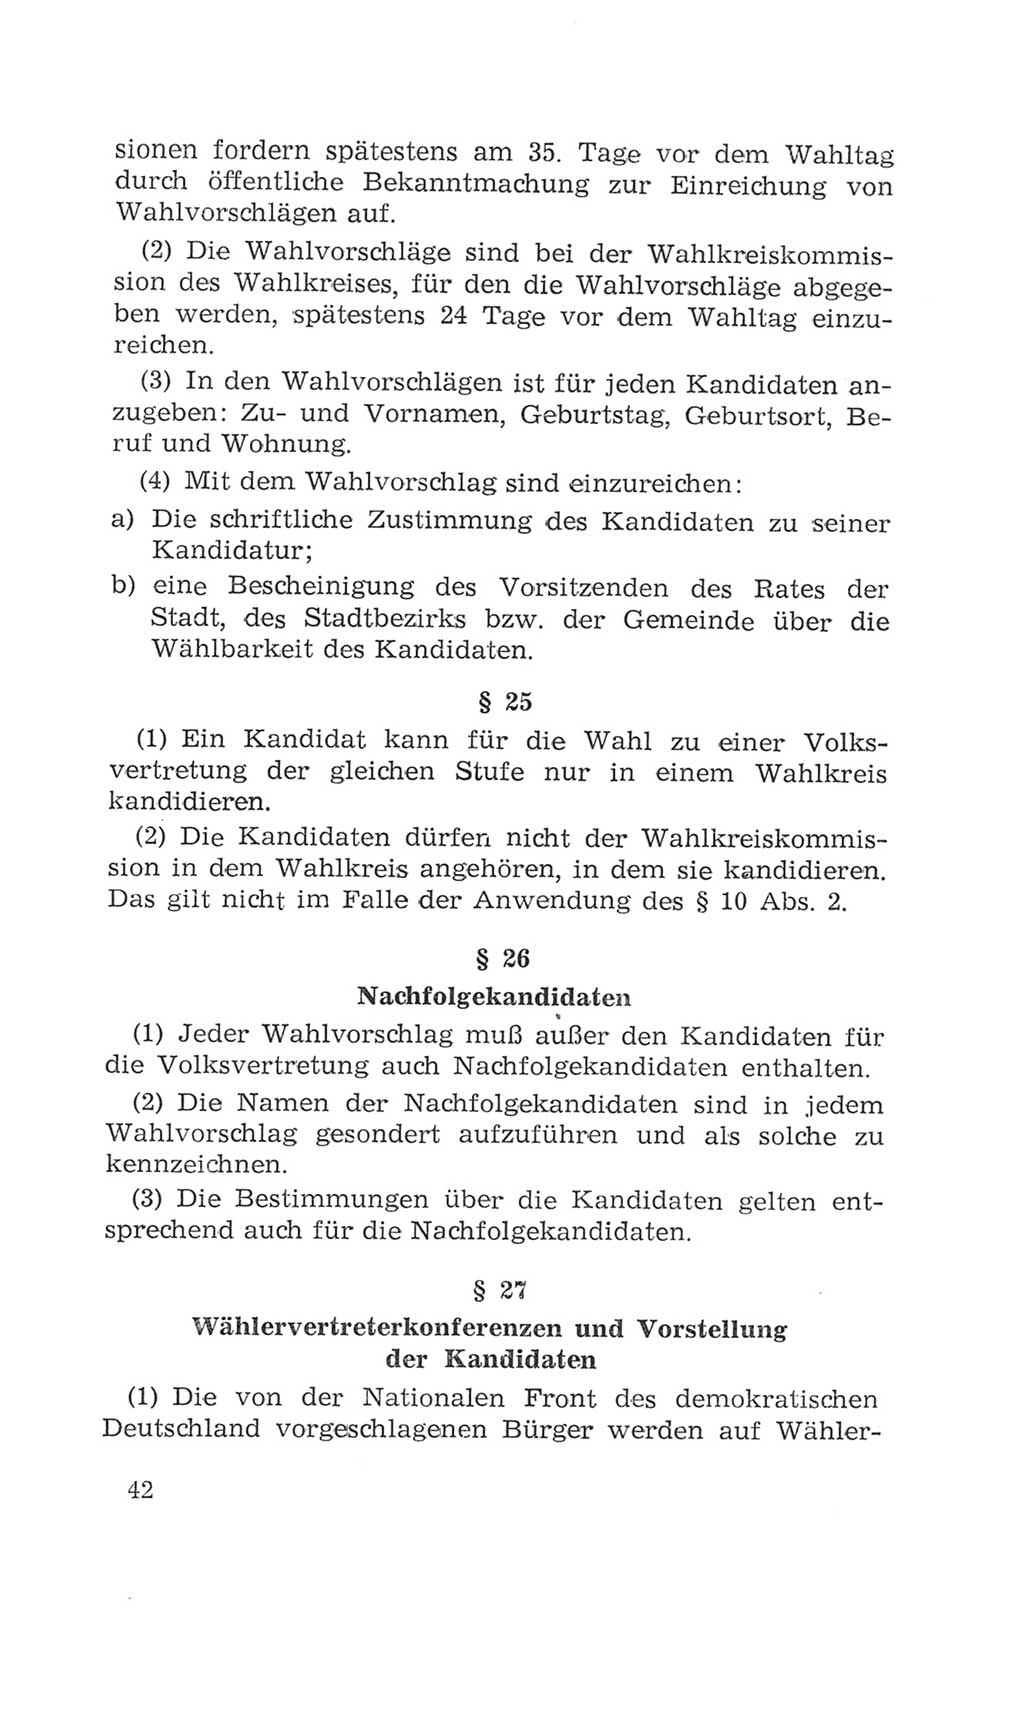 Volkskammer (VK) der Deutschen Demokratischen Republik (DDR), 4. Wahlperiode 1963-1967, Seite 42 (VK. DDR 4. WP. 1963-1967, S. 42)